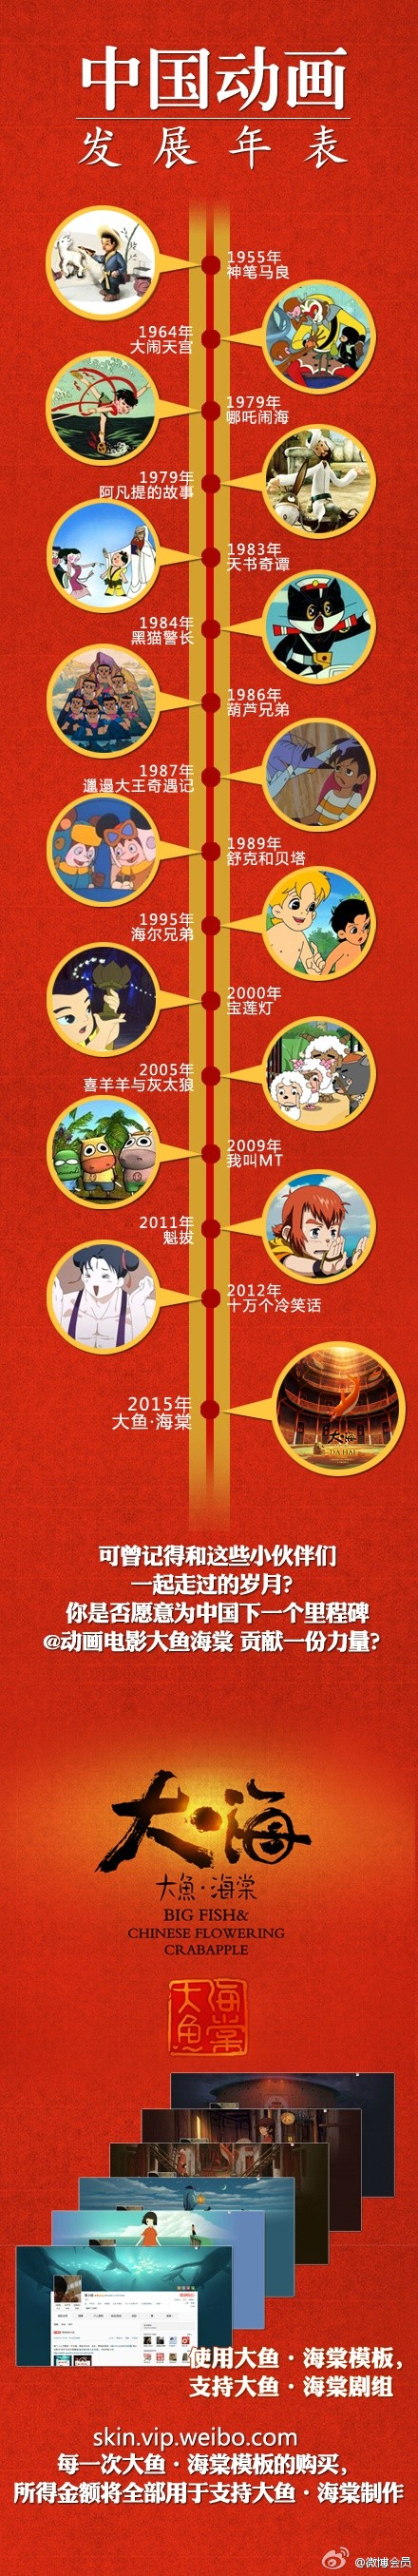 中国动画发展年表